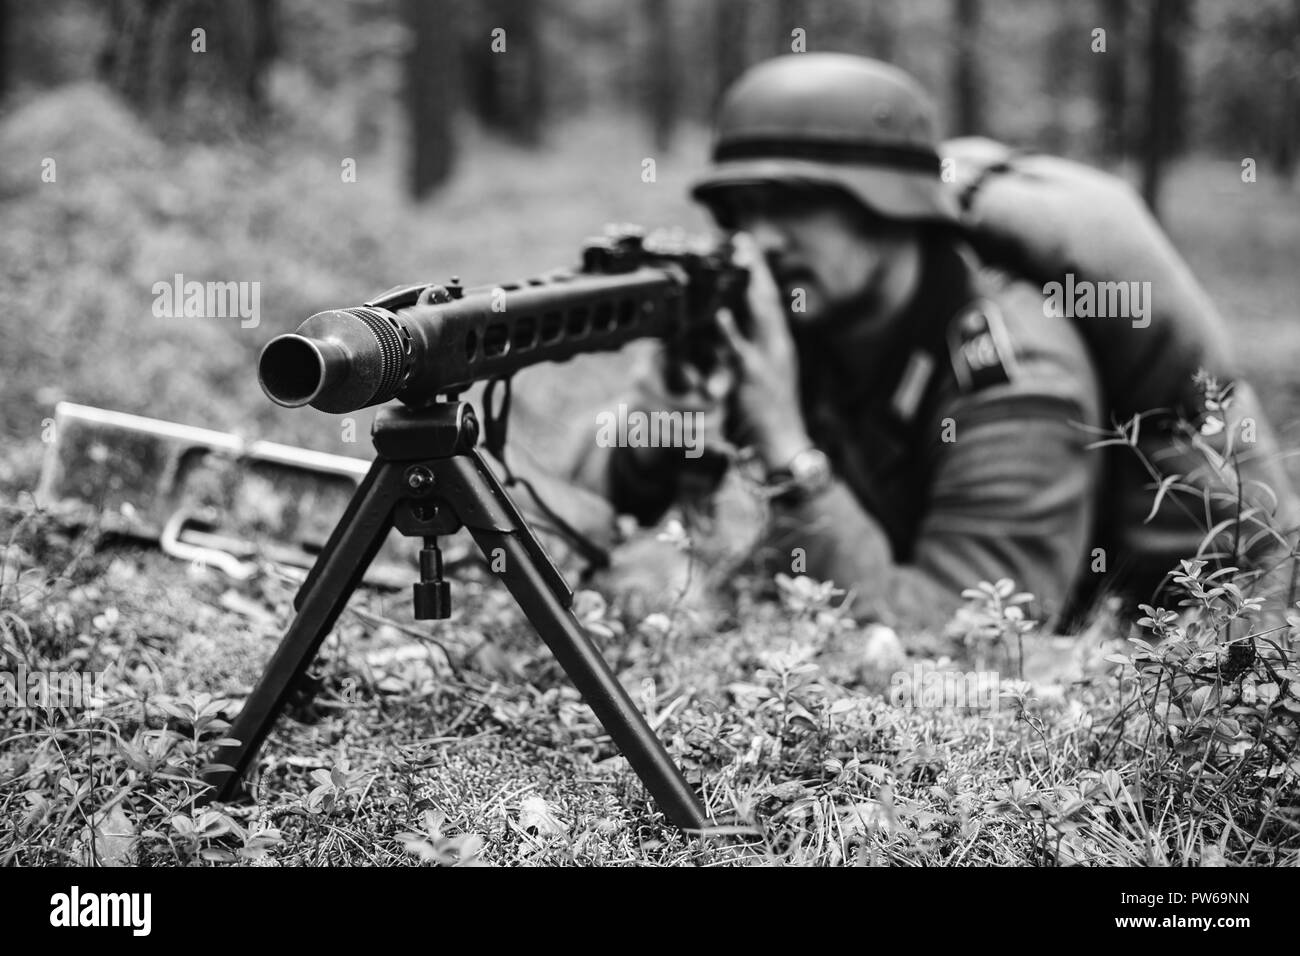 Non cachés de la reconstitution médiévale habillé en soldat de la Wehrmacht allemande visant une mitrailleuse à l'ennemi à partir de la tranchée dans la forêt. Photo en noir et blanc Couleur Banque D'Images